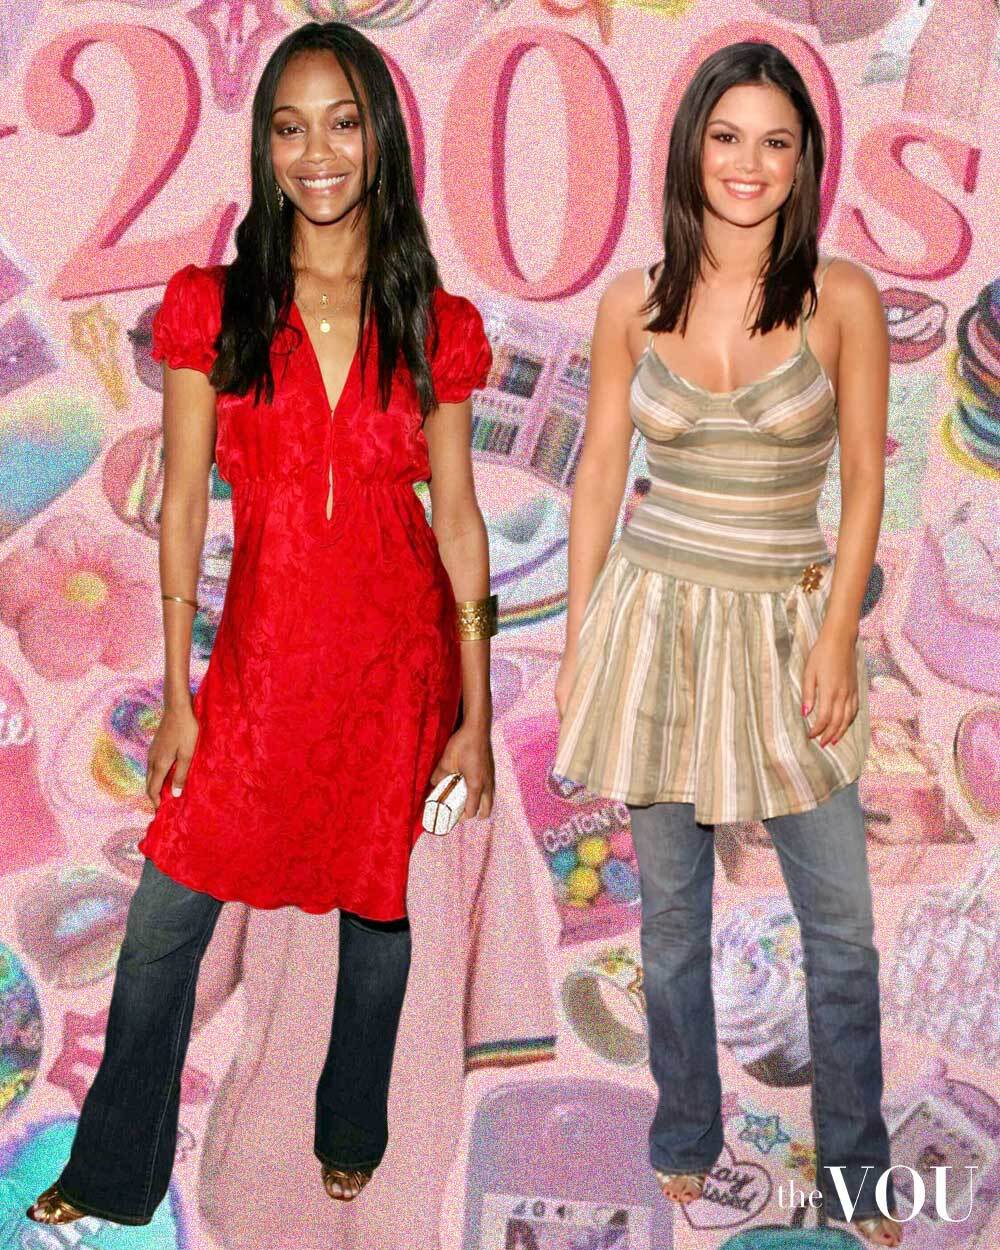 Zoey Saldana & Rachel Bilson wearing a dress over jeans in 2000s fashion